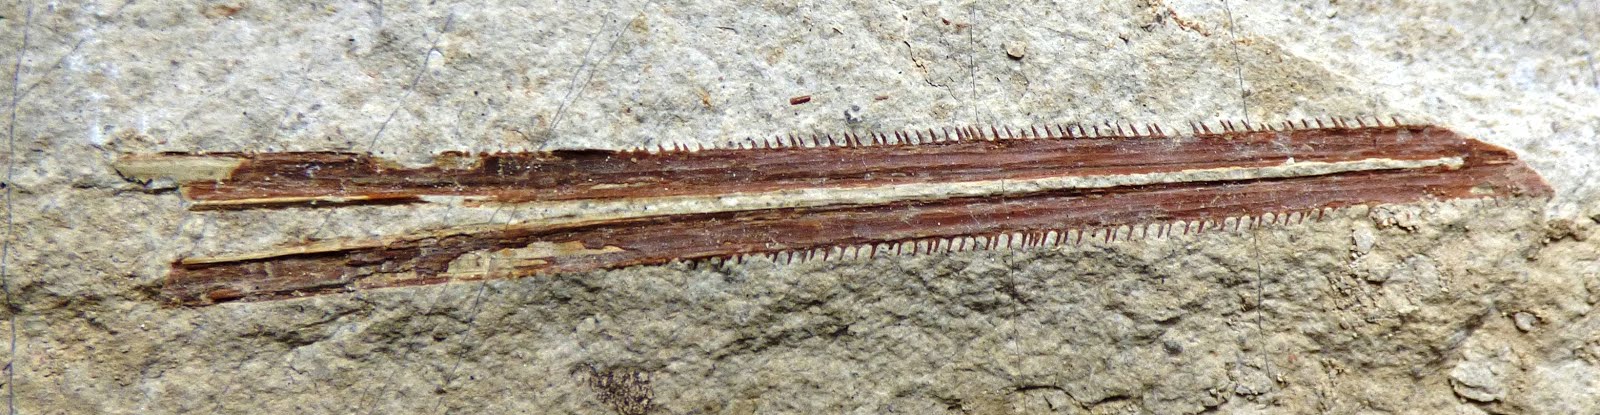 Ichthyotringidae (Ichthyotringa)